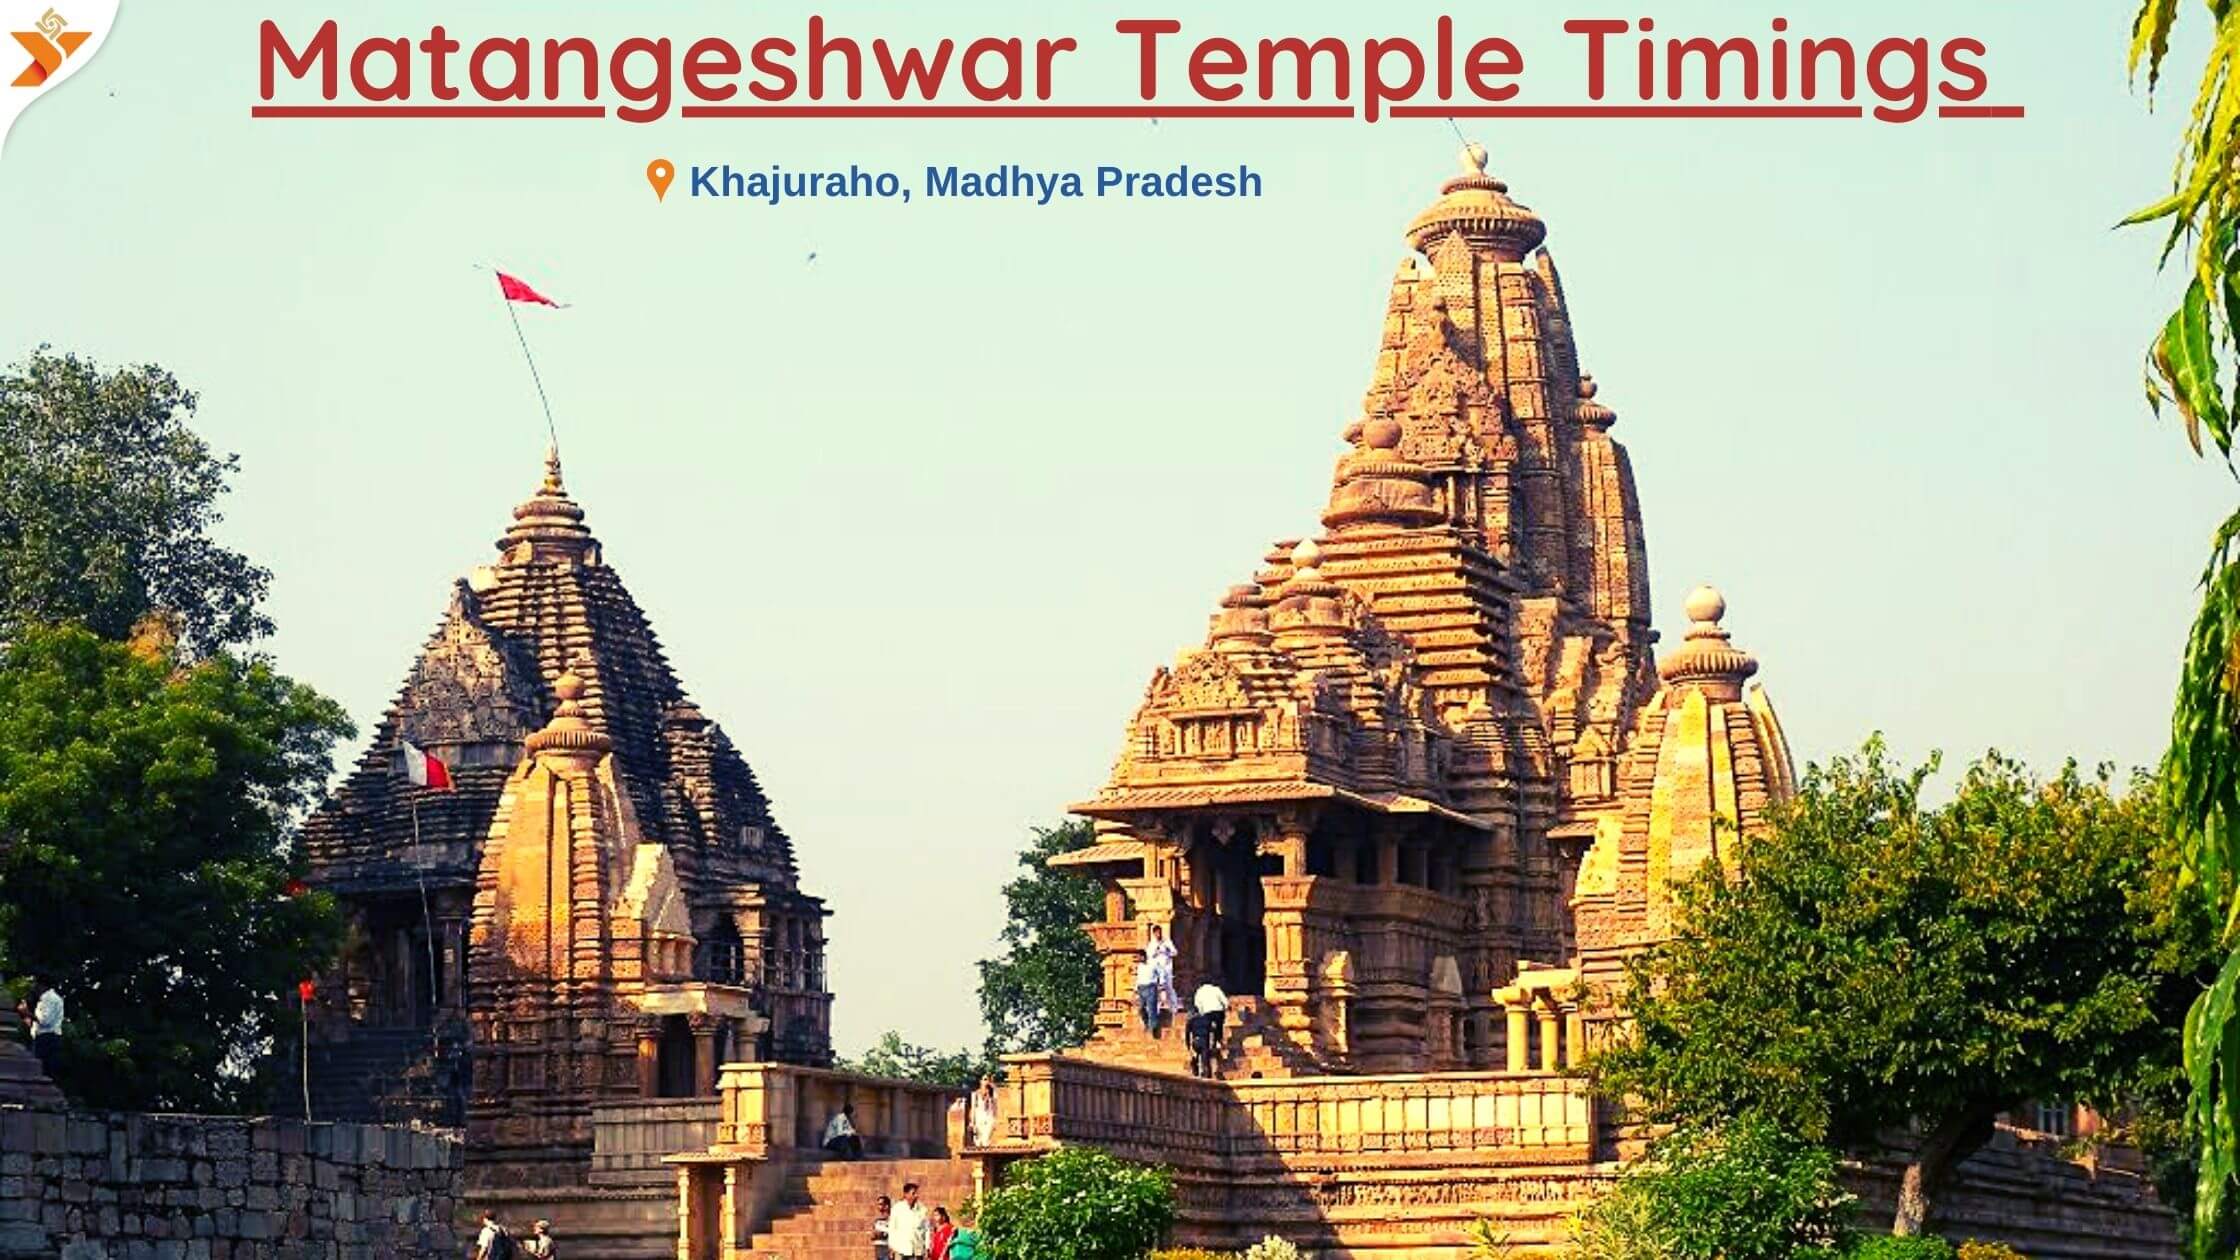 Matangeshwar Temple Timings